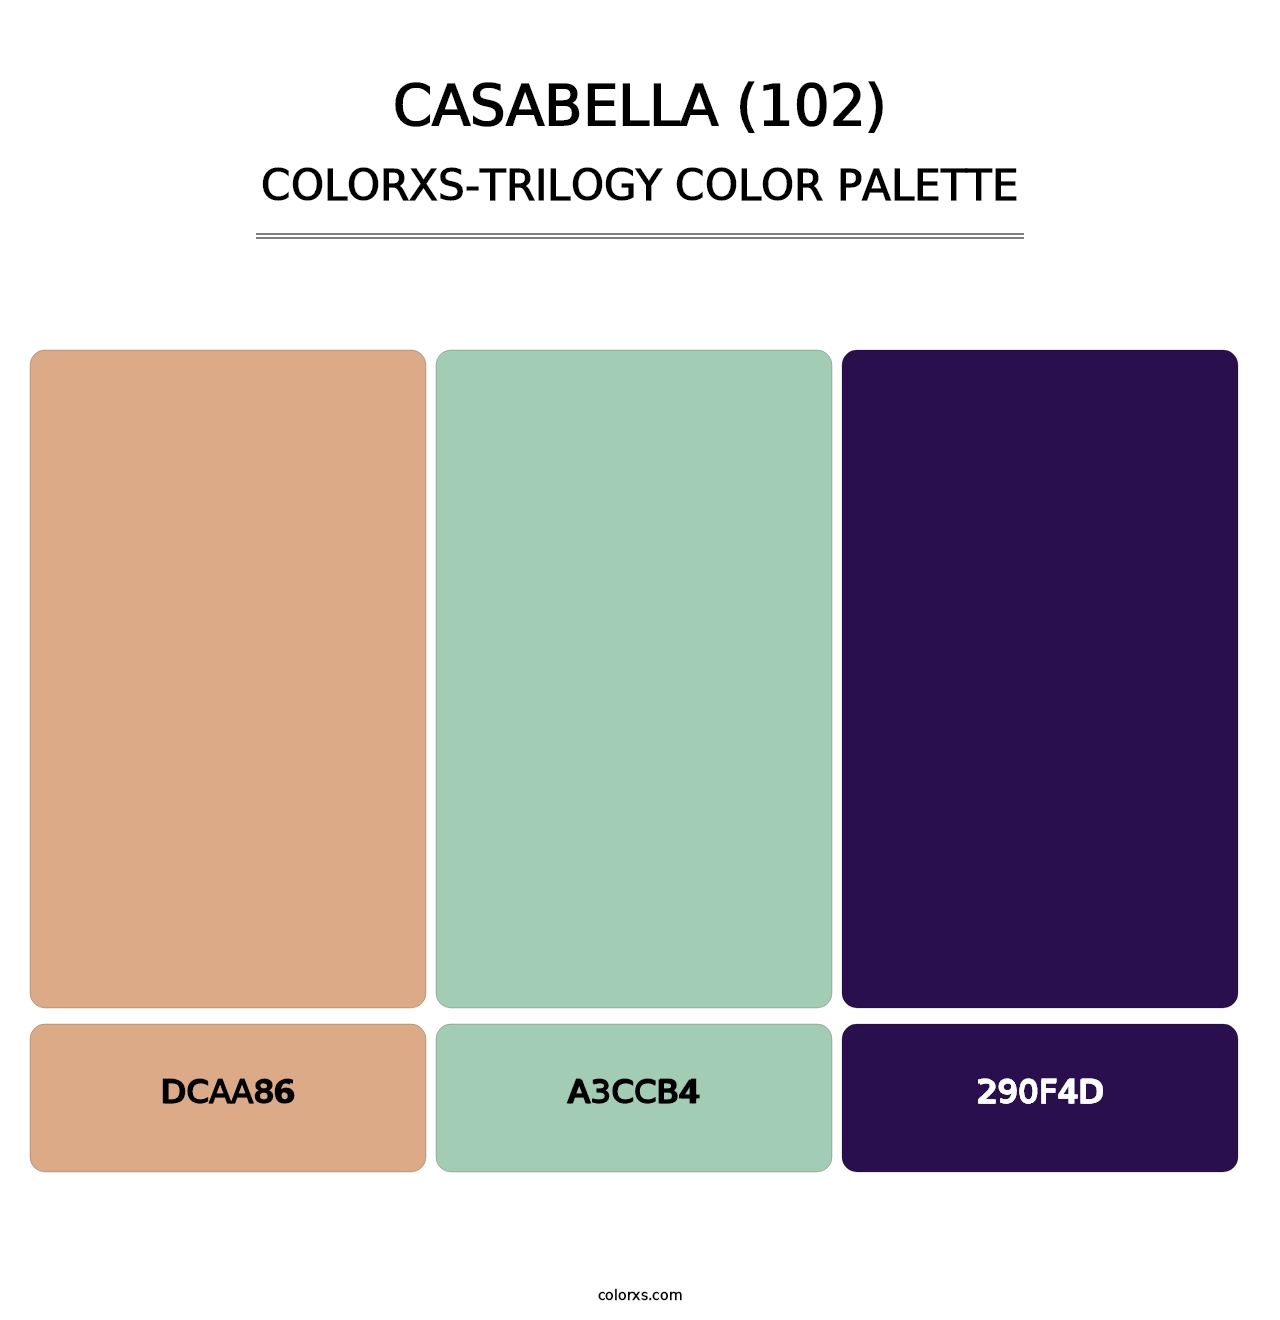 Casabella (102) - Colorxs Trilogy Palette